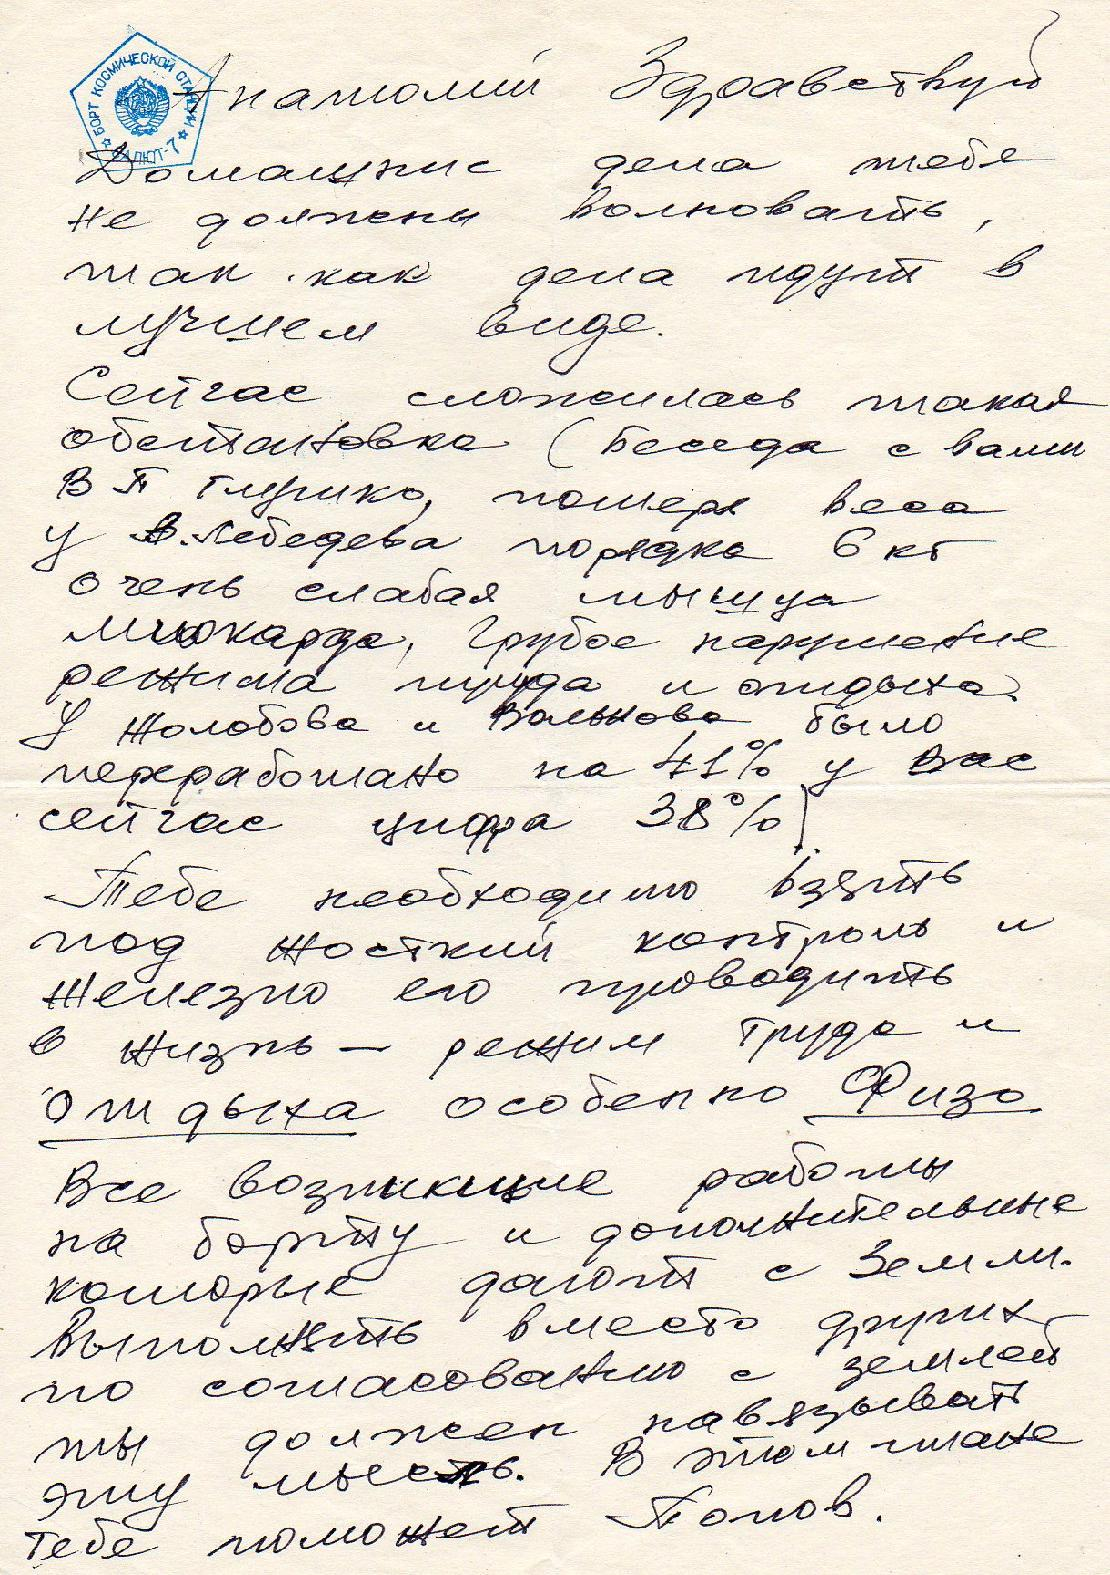 Capitolo 7: Stazione Spaziale Salyut-7 Unico cosmogramma ufficiale con lettera timbrato in Cosmodromo Baikonur con